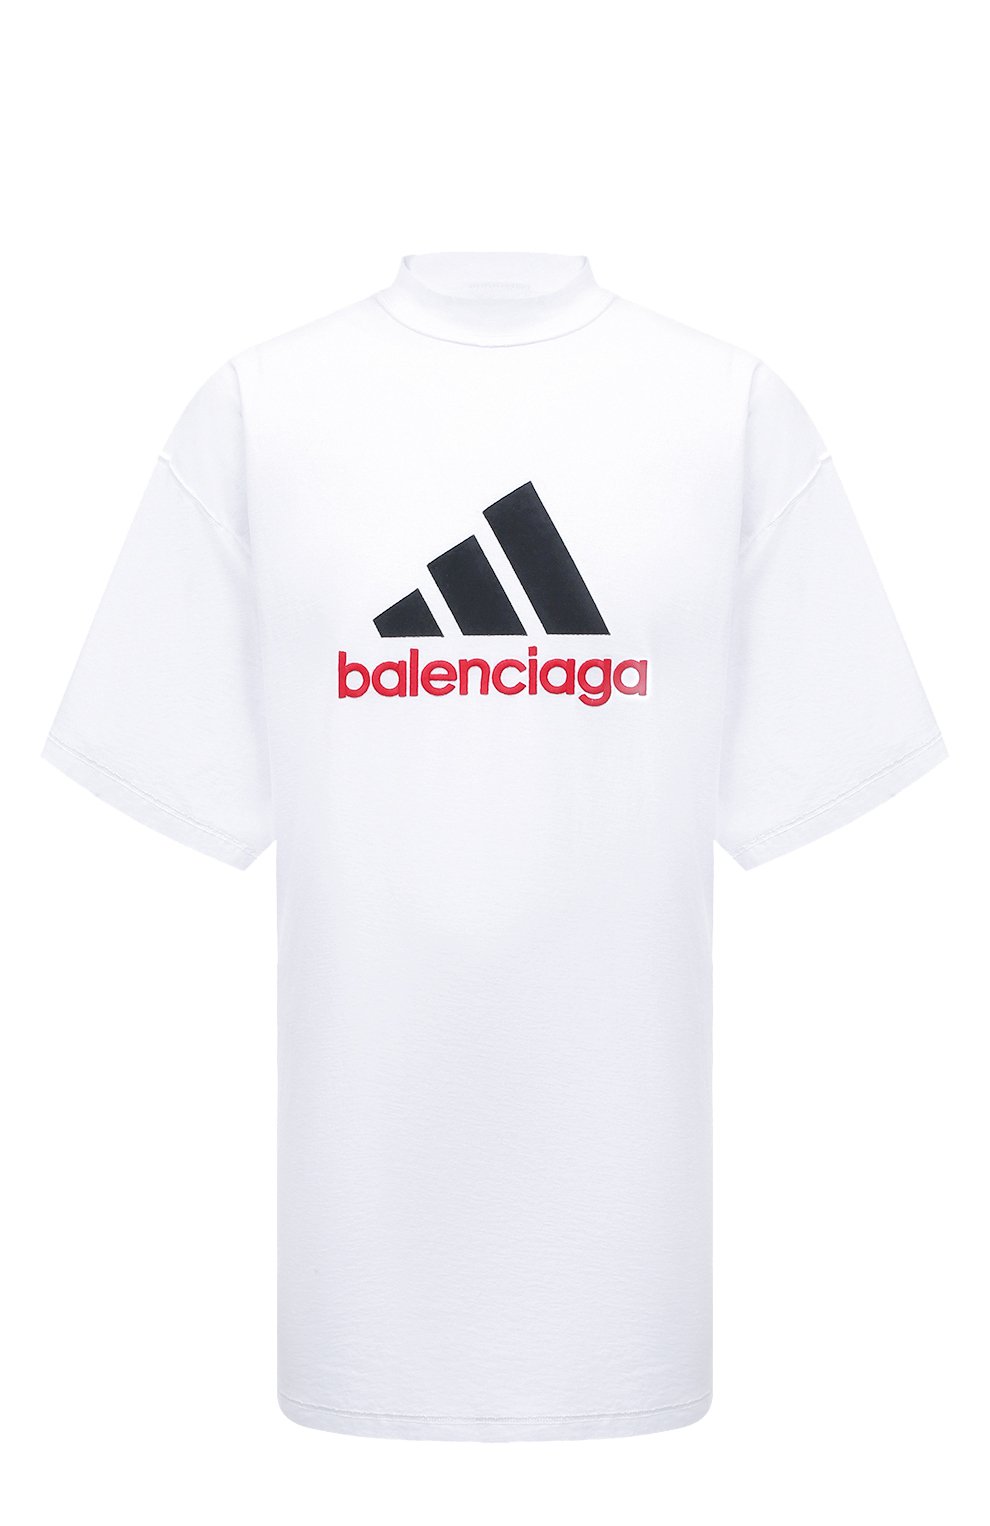 Футболки Balenciaga, Хлопковая футболка adidas x Balenciaga Balenciaga, Португалия, Белый, Хлопок: 100%;, 13376442  - купить